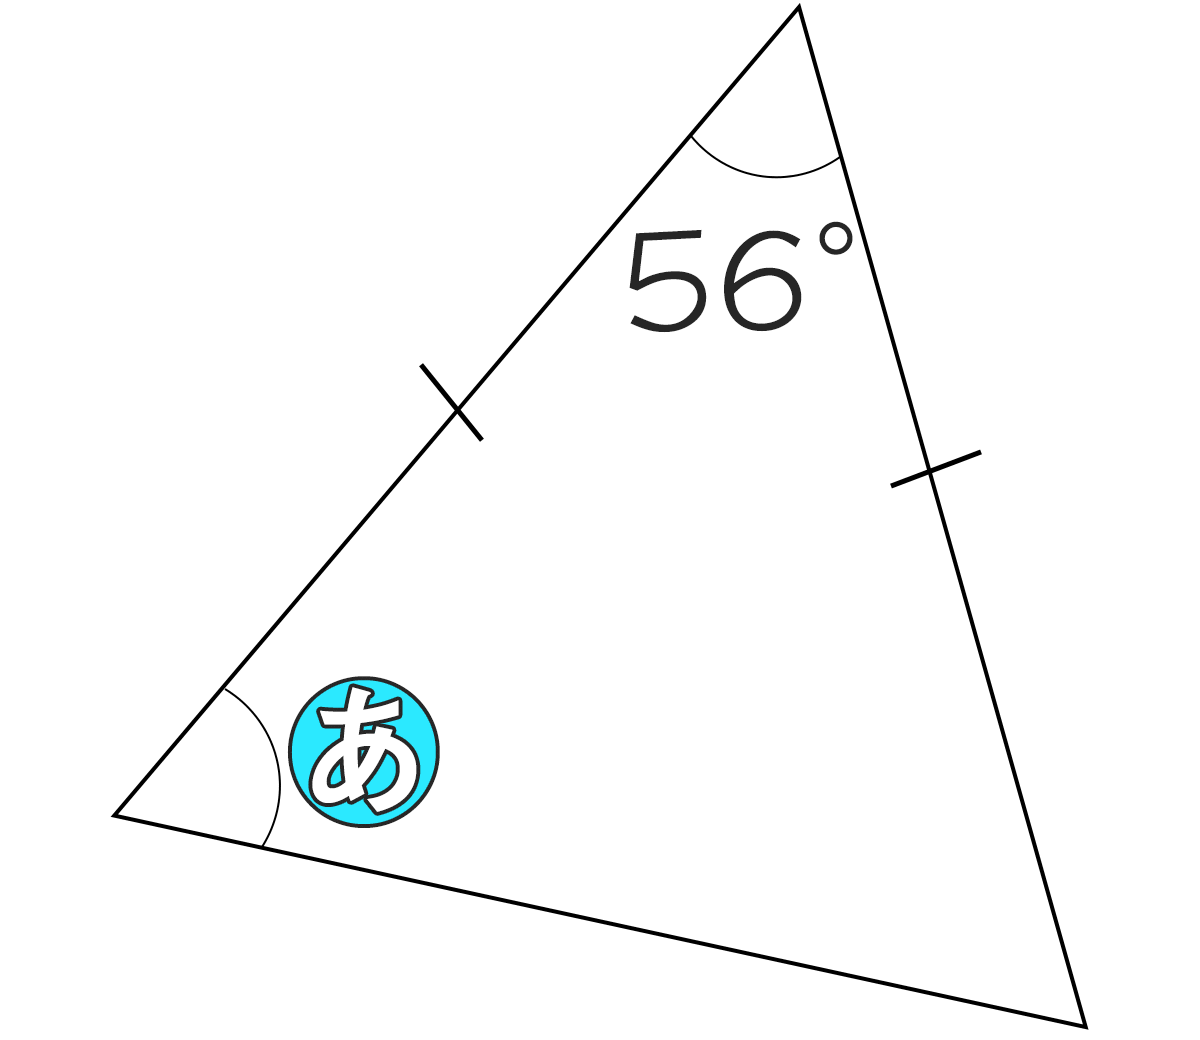 二等辺三角形の頂角が56°のとき底角の角度は何度ですか